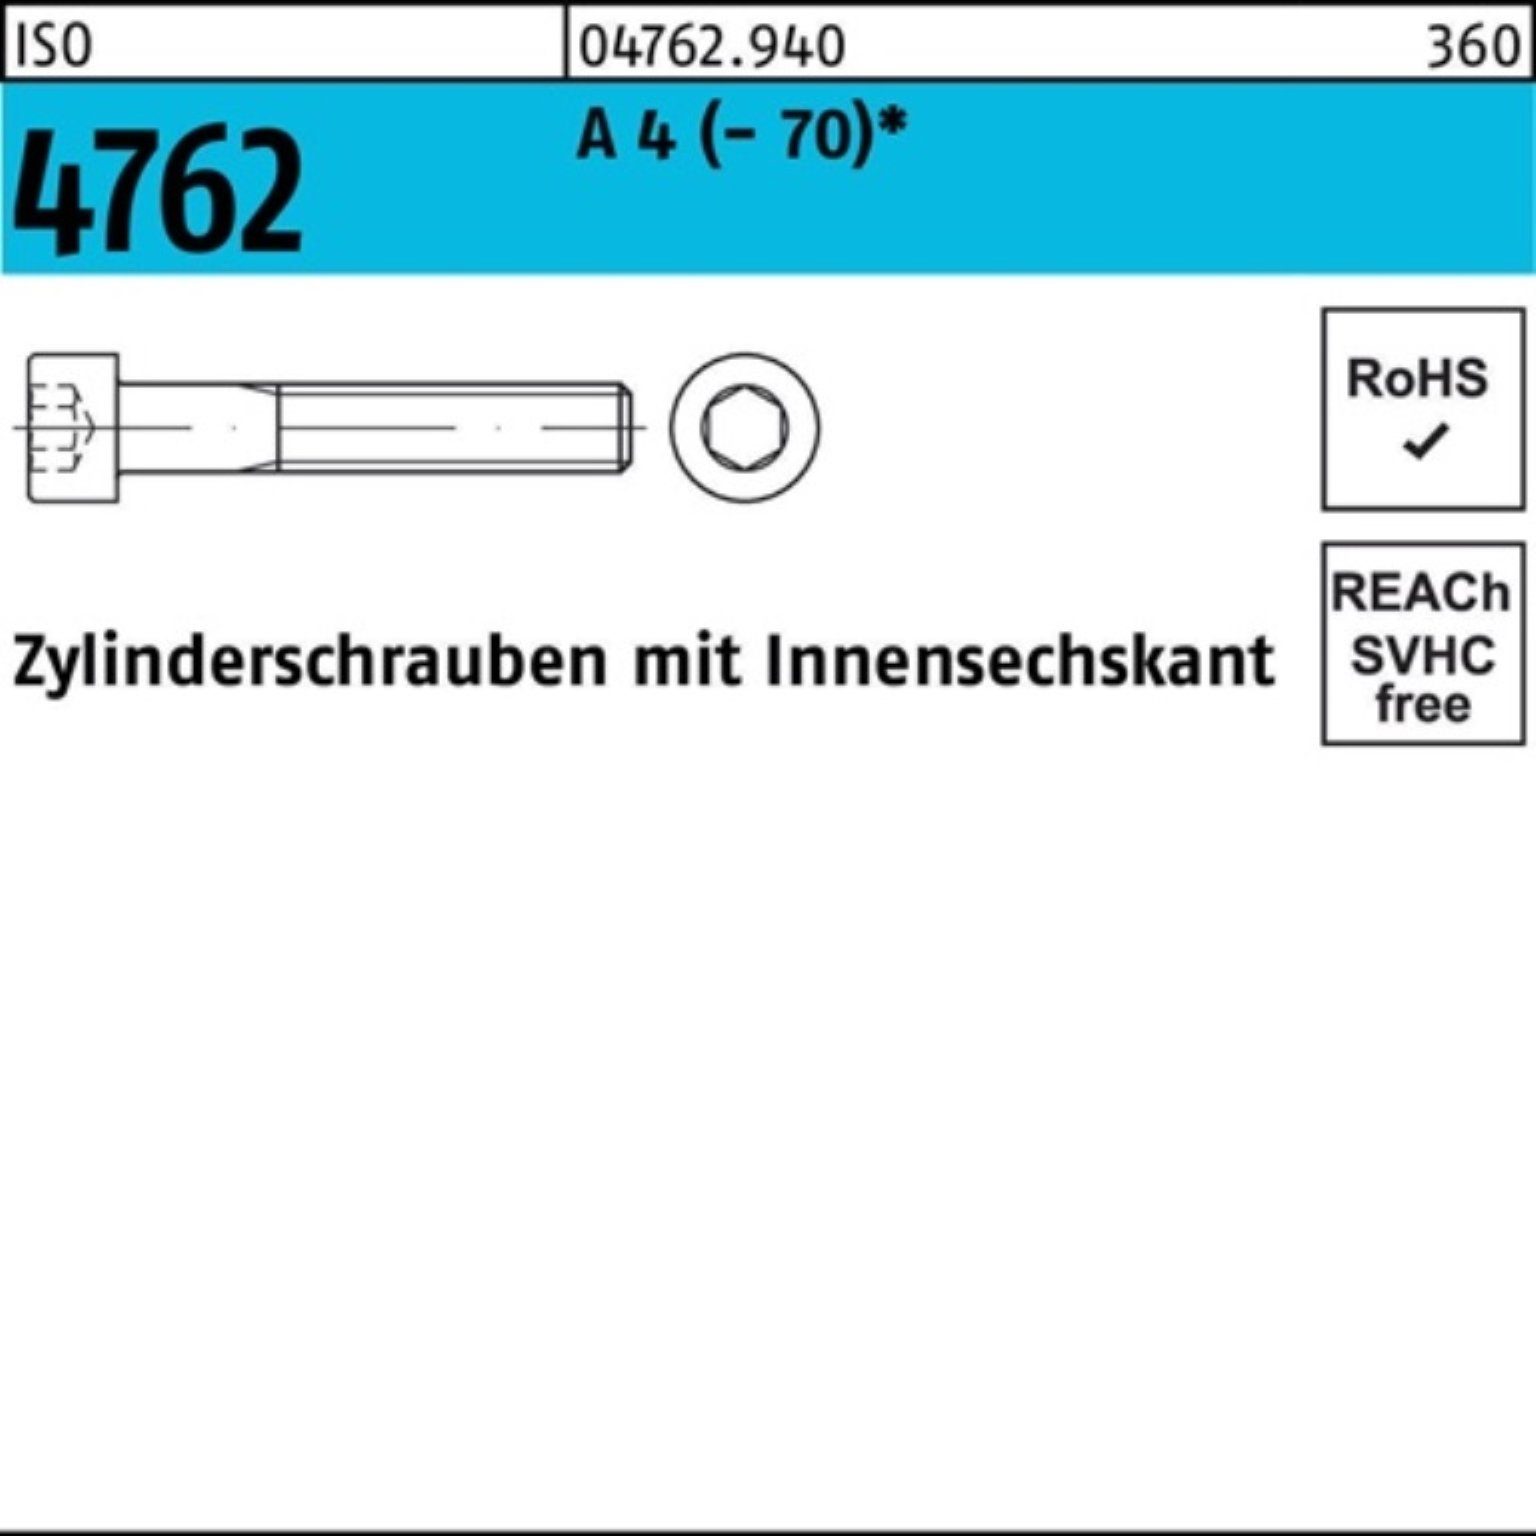 Zylinderschraube Innen-6kt Pack 4 Reyher ISO St 100er 45 A (70) M24x Zylinderschraube 4762 1